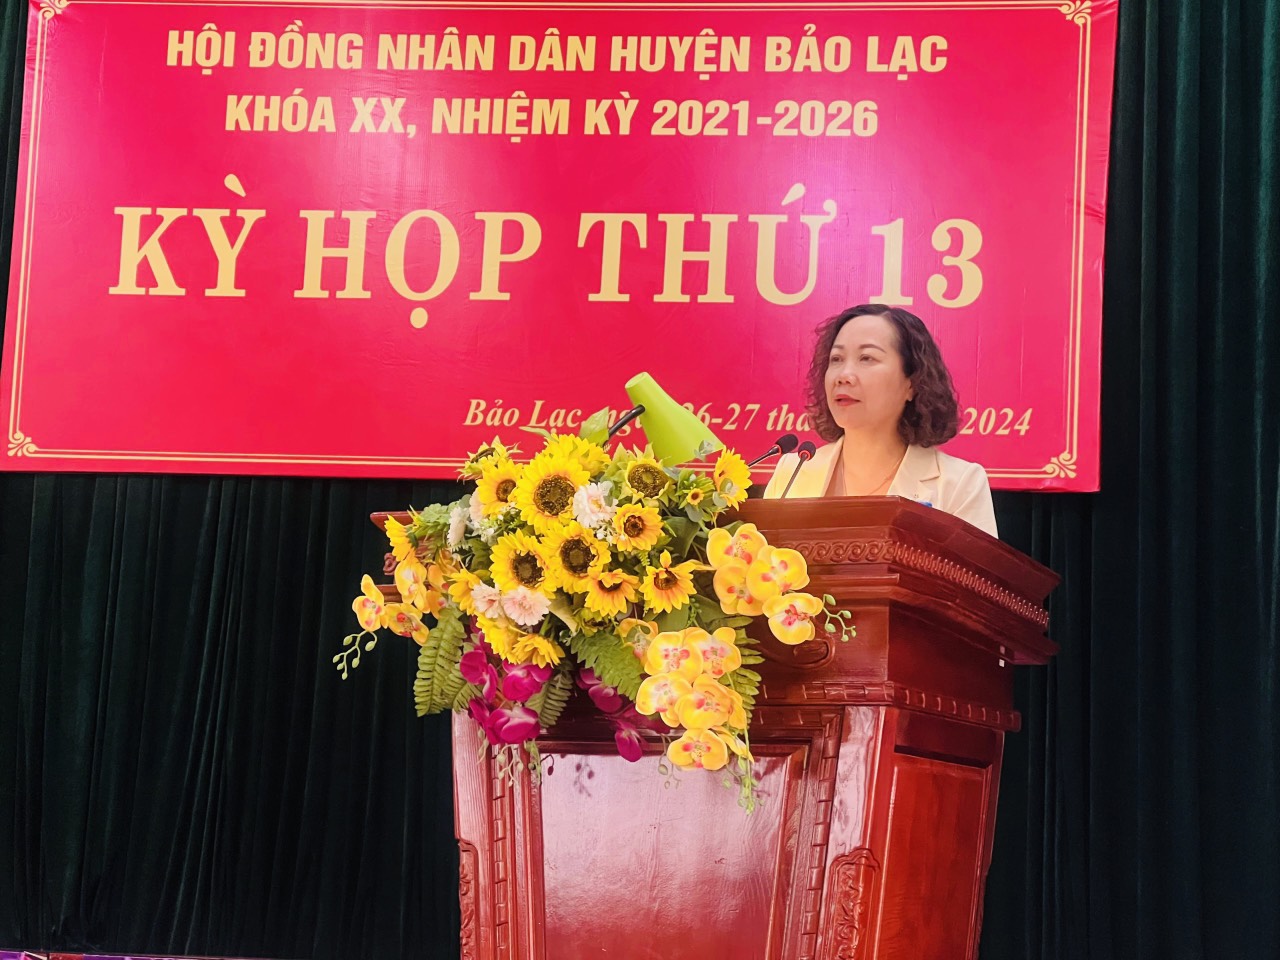 Phó Chủ tịch HĐND tỉnh Hà Nhật Lệ phát biểu tại kỳ họp